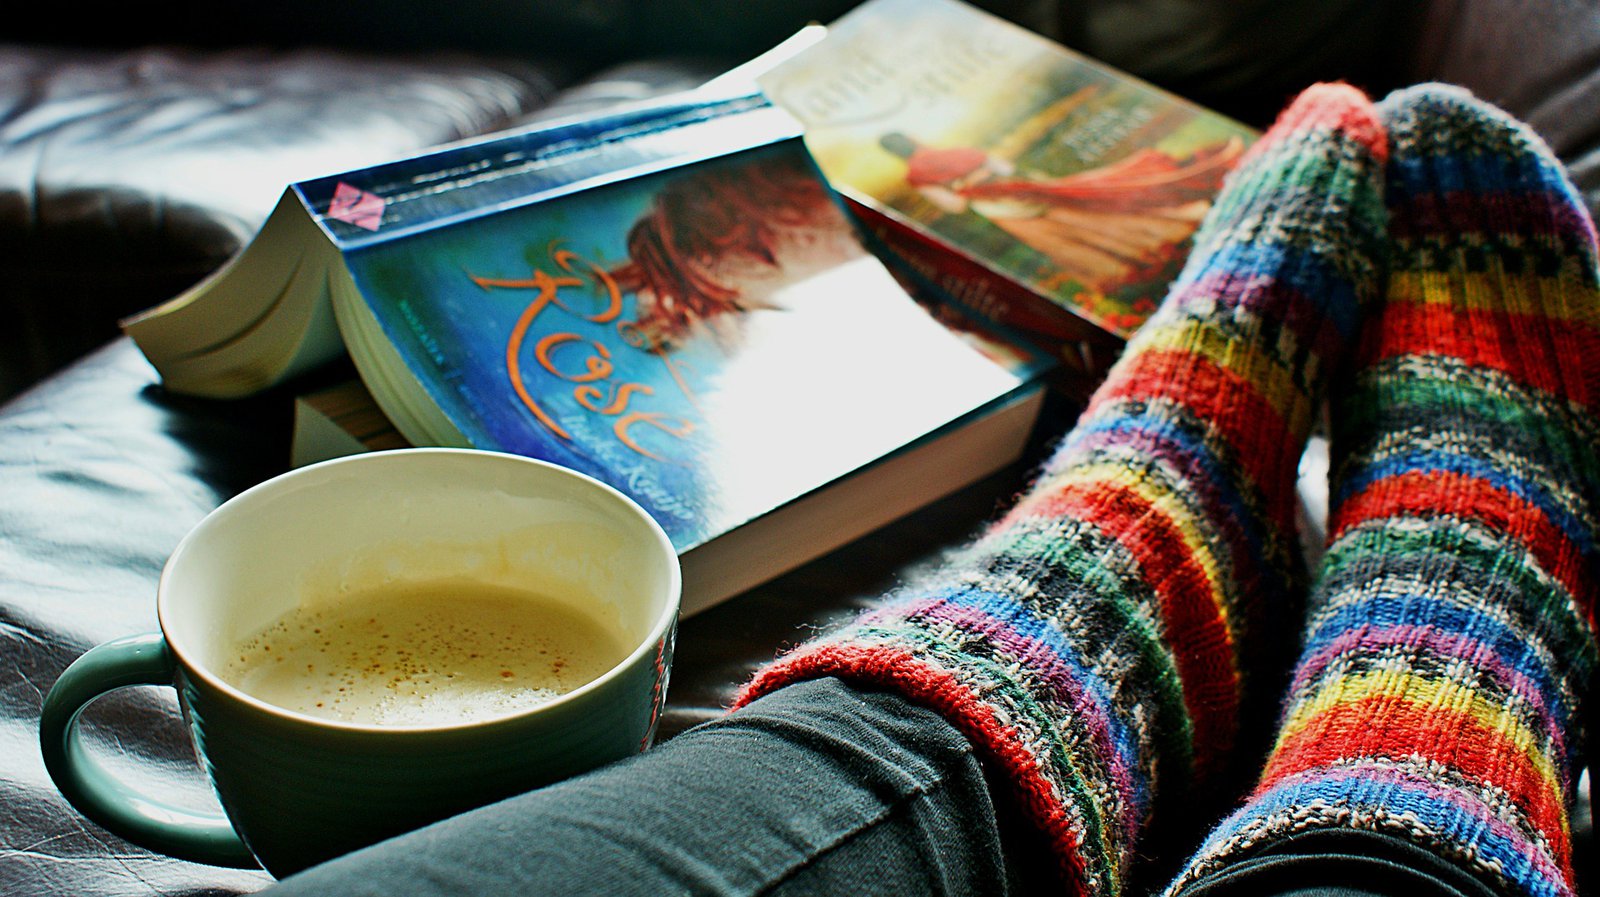 Ein Paar in Stricksocken gekleidete Füße, neben denen zwei Bücher und eine Tasse Kaffee liegen.